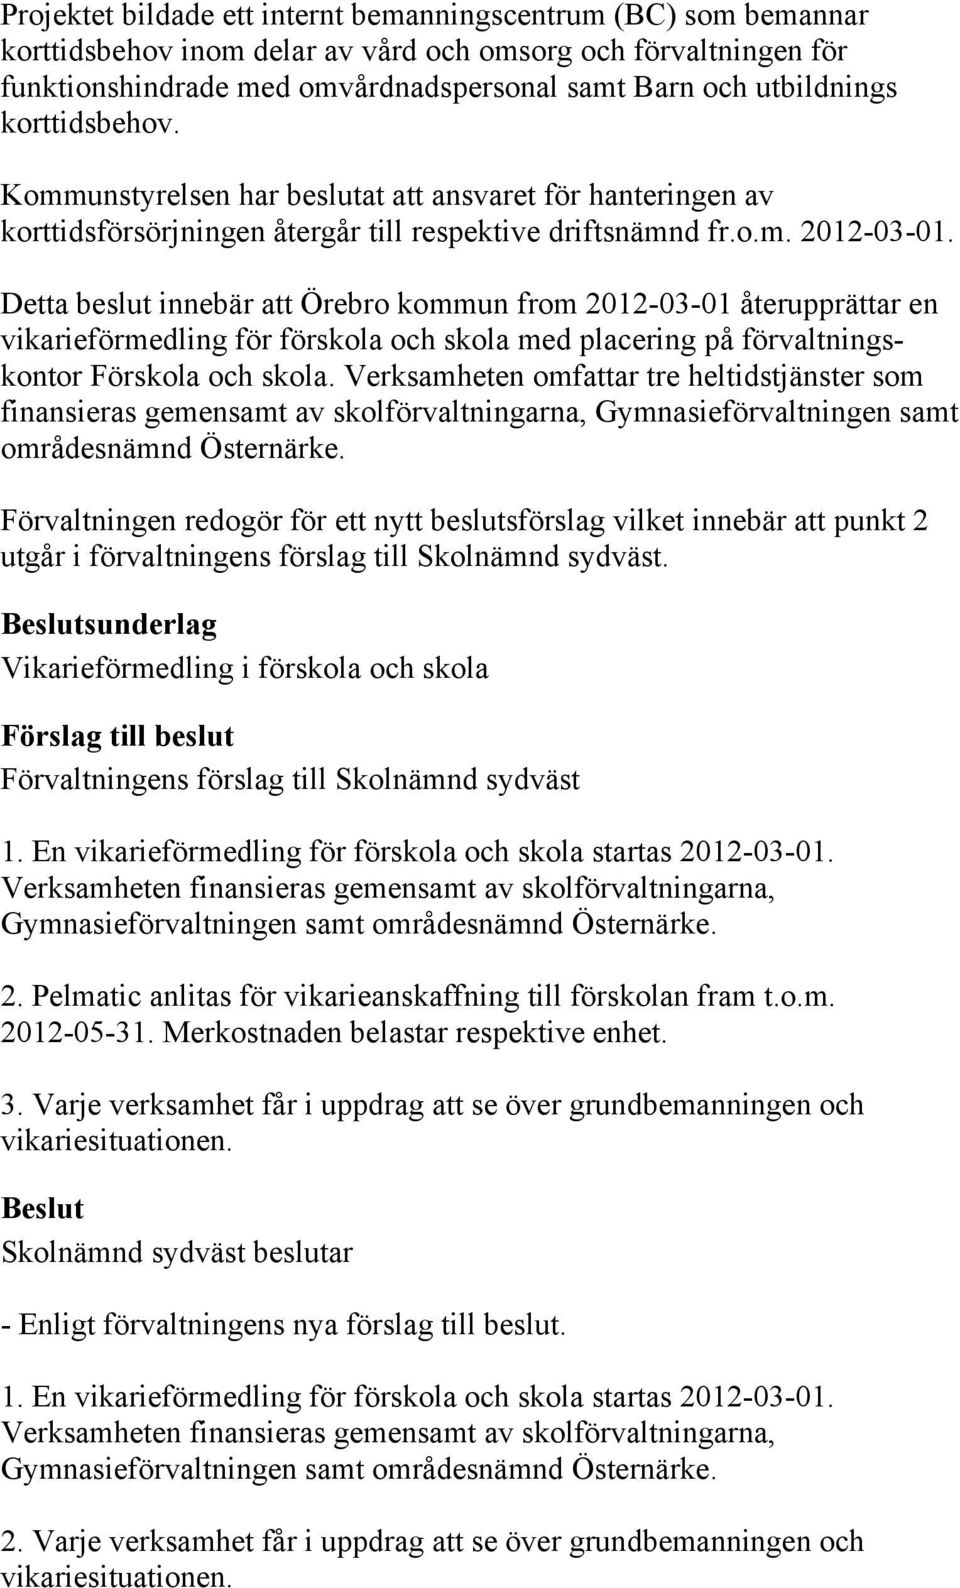 Detta beslut innebär att Örebro kommun from 2012-03-01 återupprättar en vikarieförmedling för förskola och skola med placering på förvaltningskontor Förskola och skola.